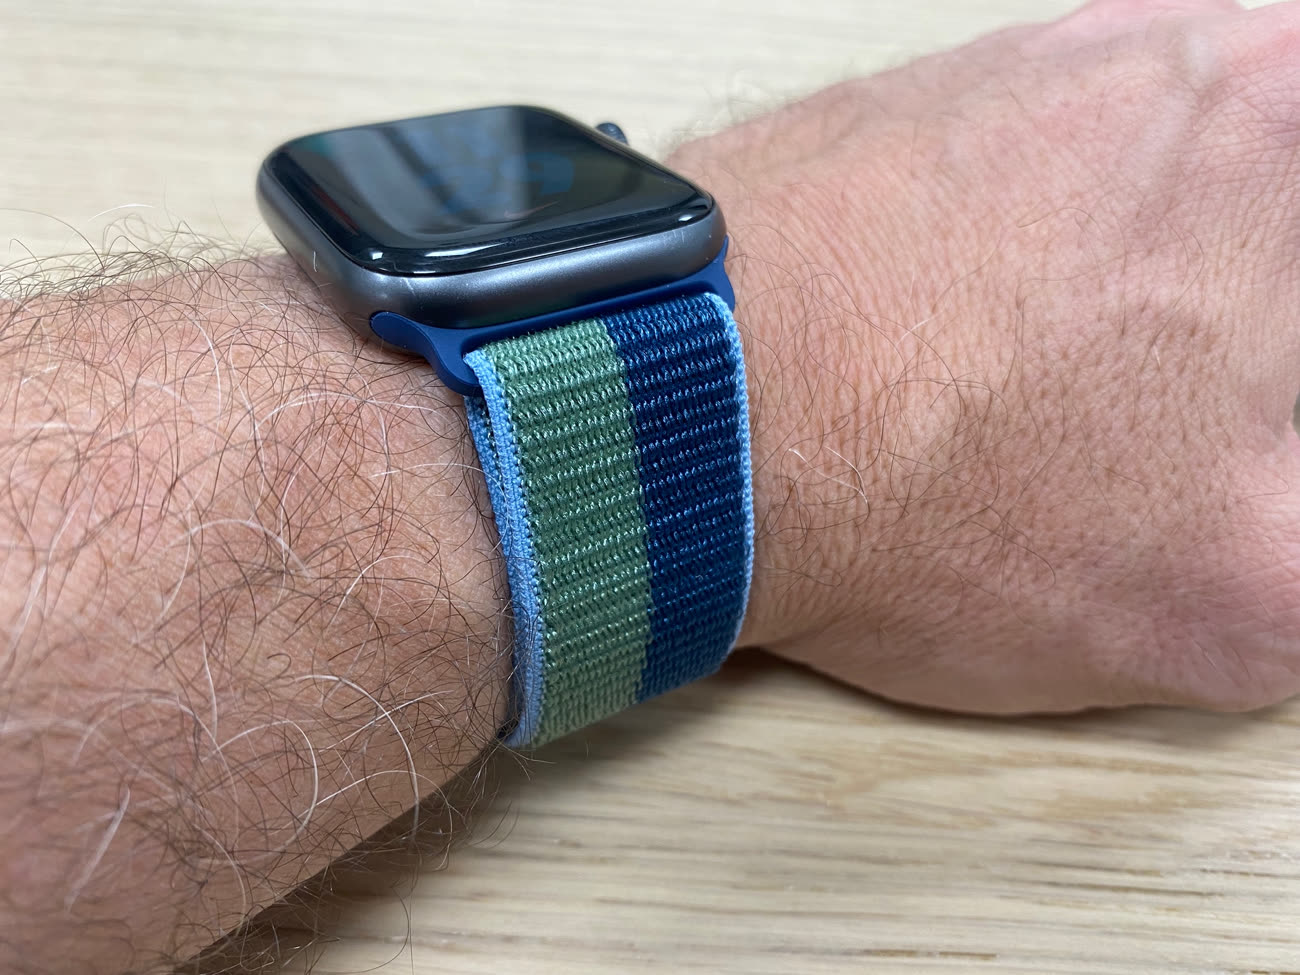 Test, photos et avis sur le bracelet Apple Watch Benuo cuir